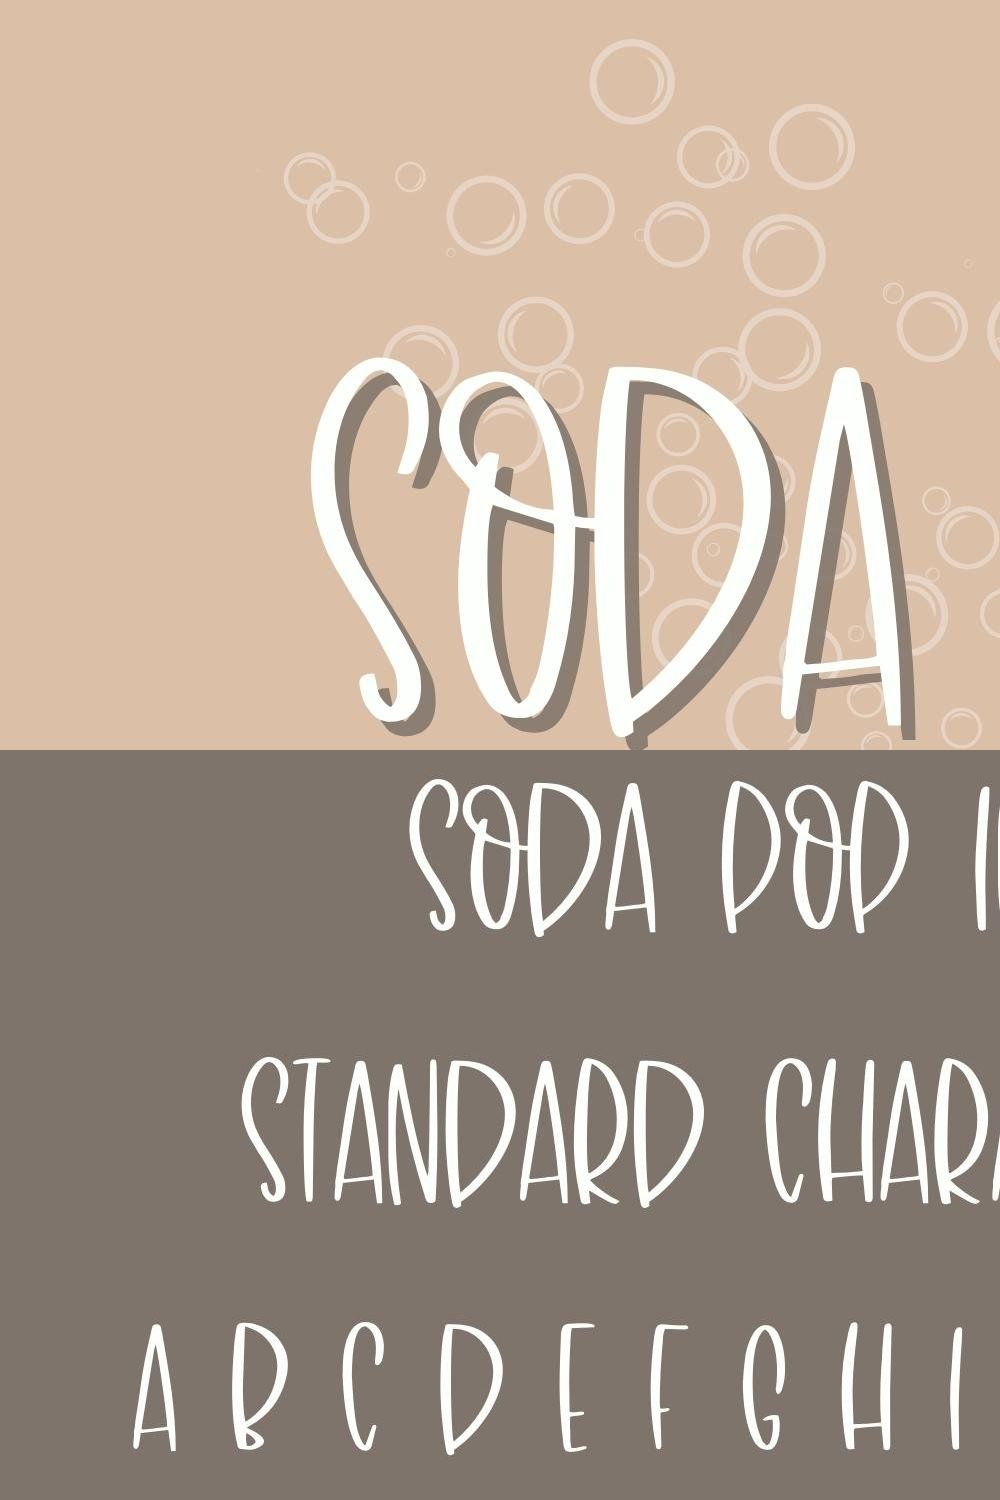 Soda Pop, Fun Handwritten Font pinterest preview image.